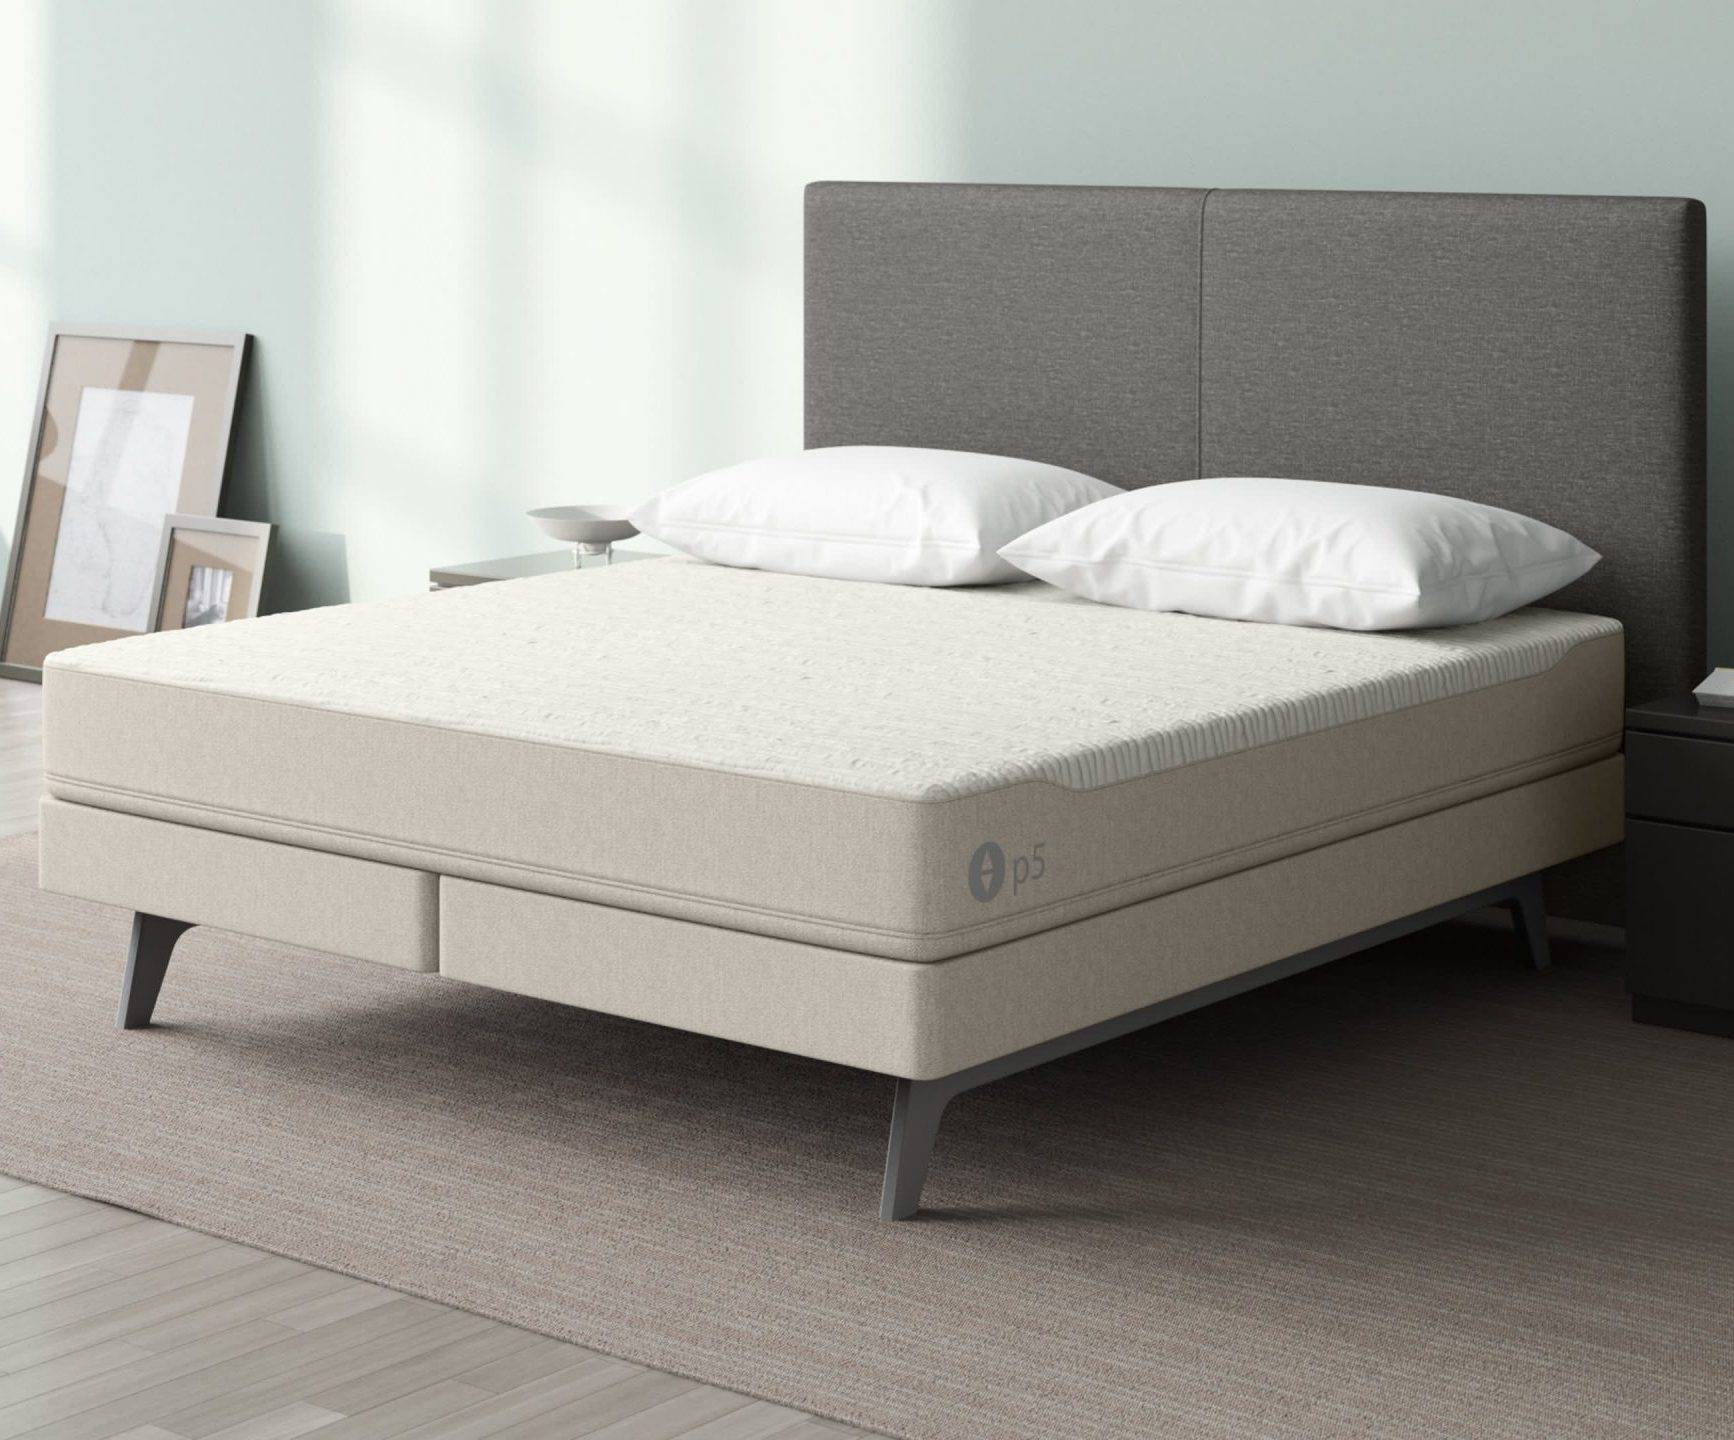 sleep number p5 bed mattress reviews